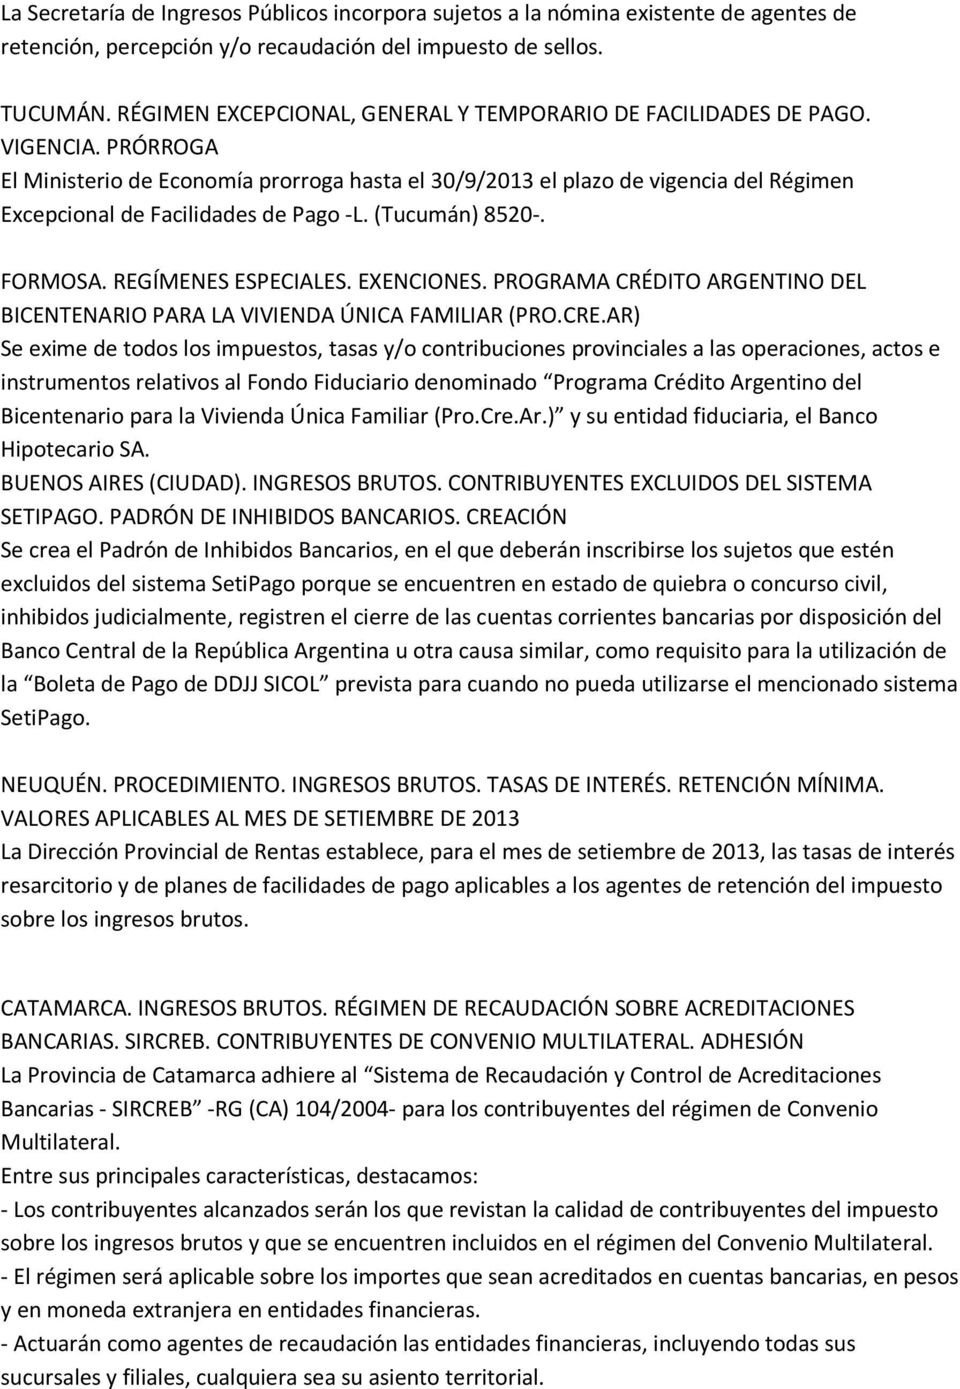 PRÓRROGA El Ministerio de Economía prorroga hasta el 30/9/2013 el plazo de vigencia del Régimen Excepcional de Facilidades de Pago -L. (Tucumán) 8520-. FORMOSA. REGÍMENES ESPECIALES. EXENCIONES.